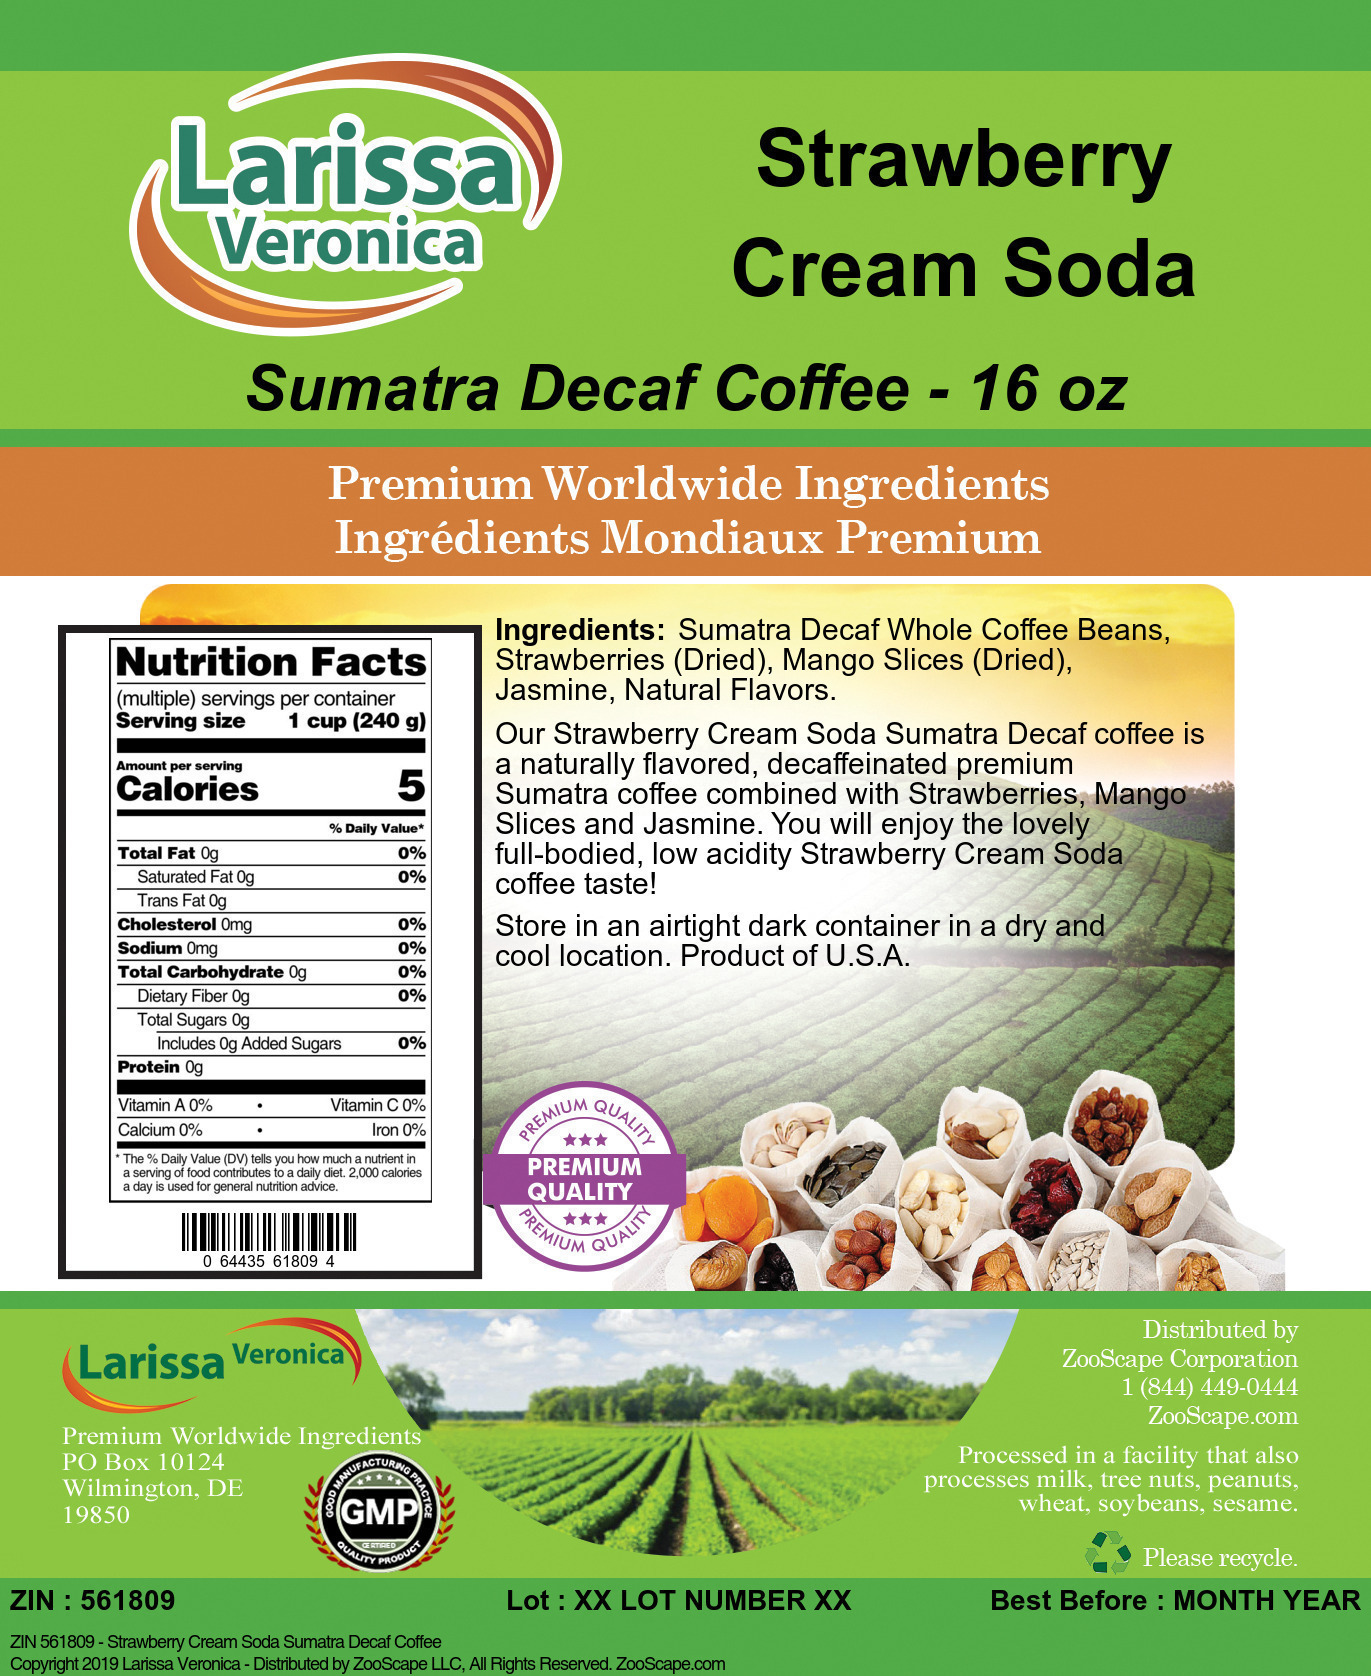 Strawberry Cream Soda Sumatra Decaf Coffee - Label